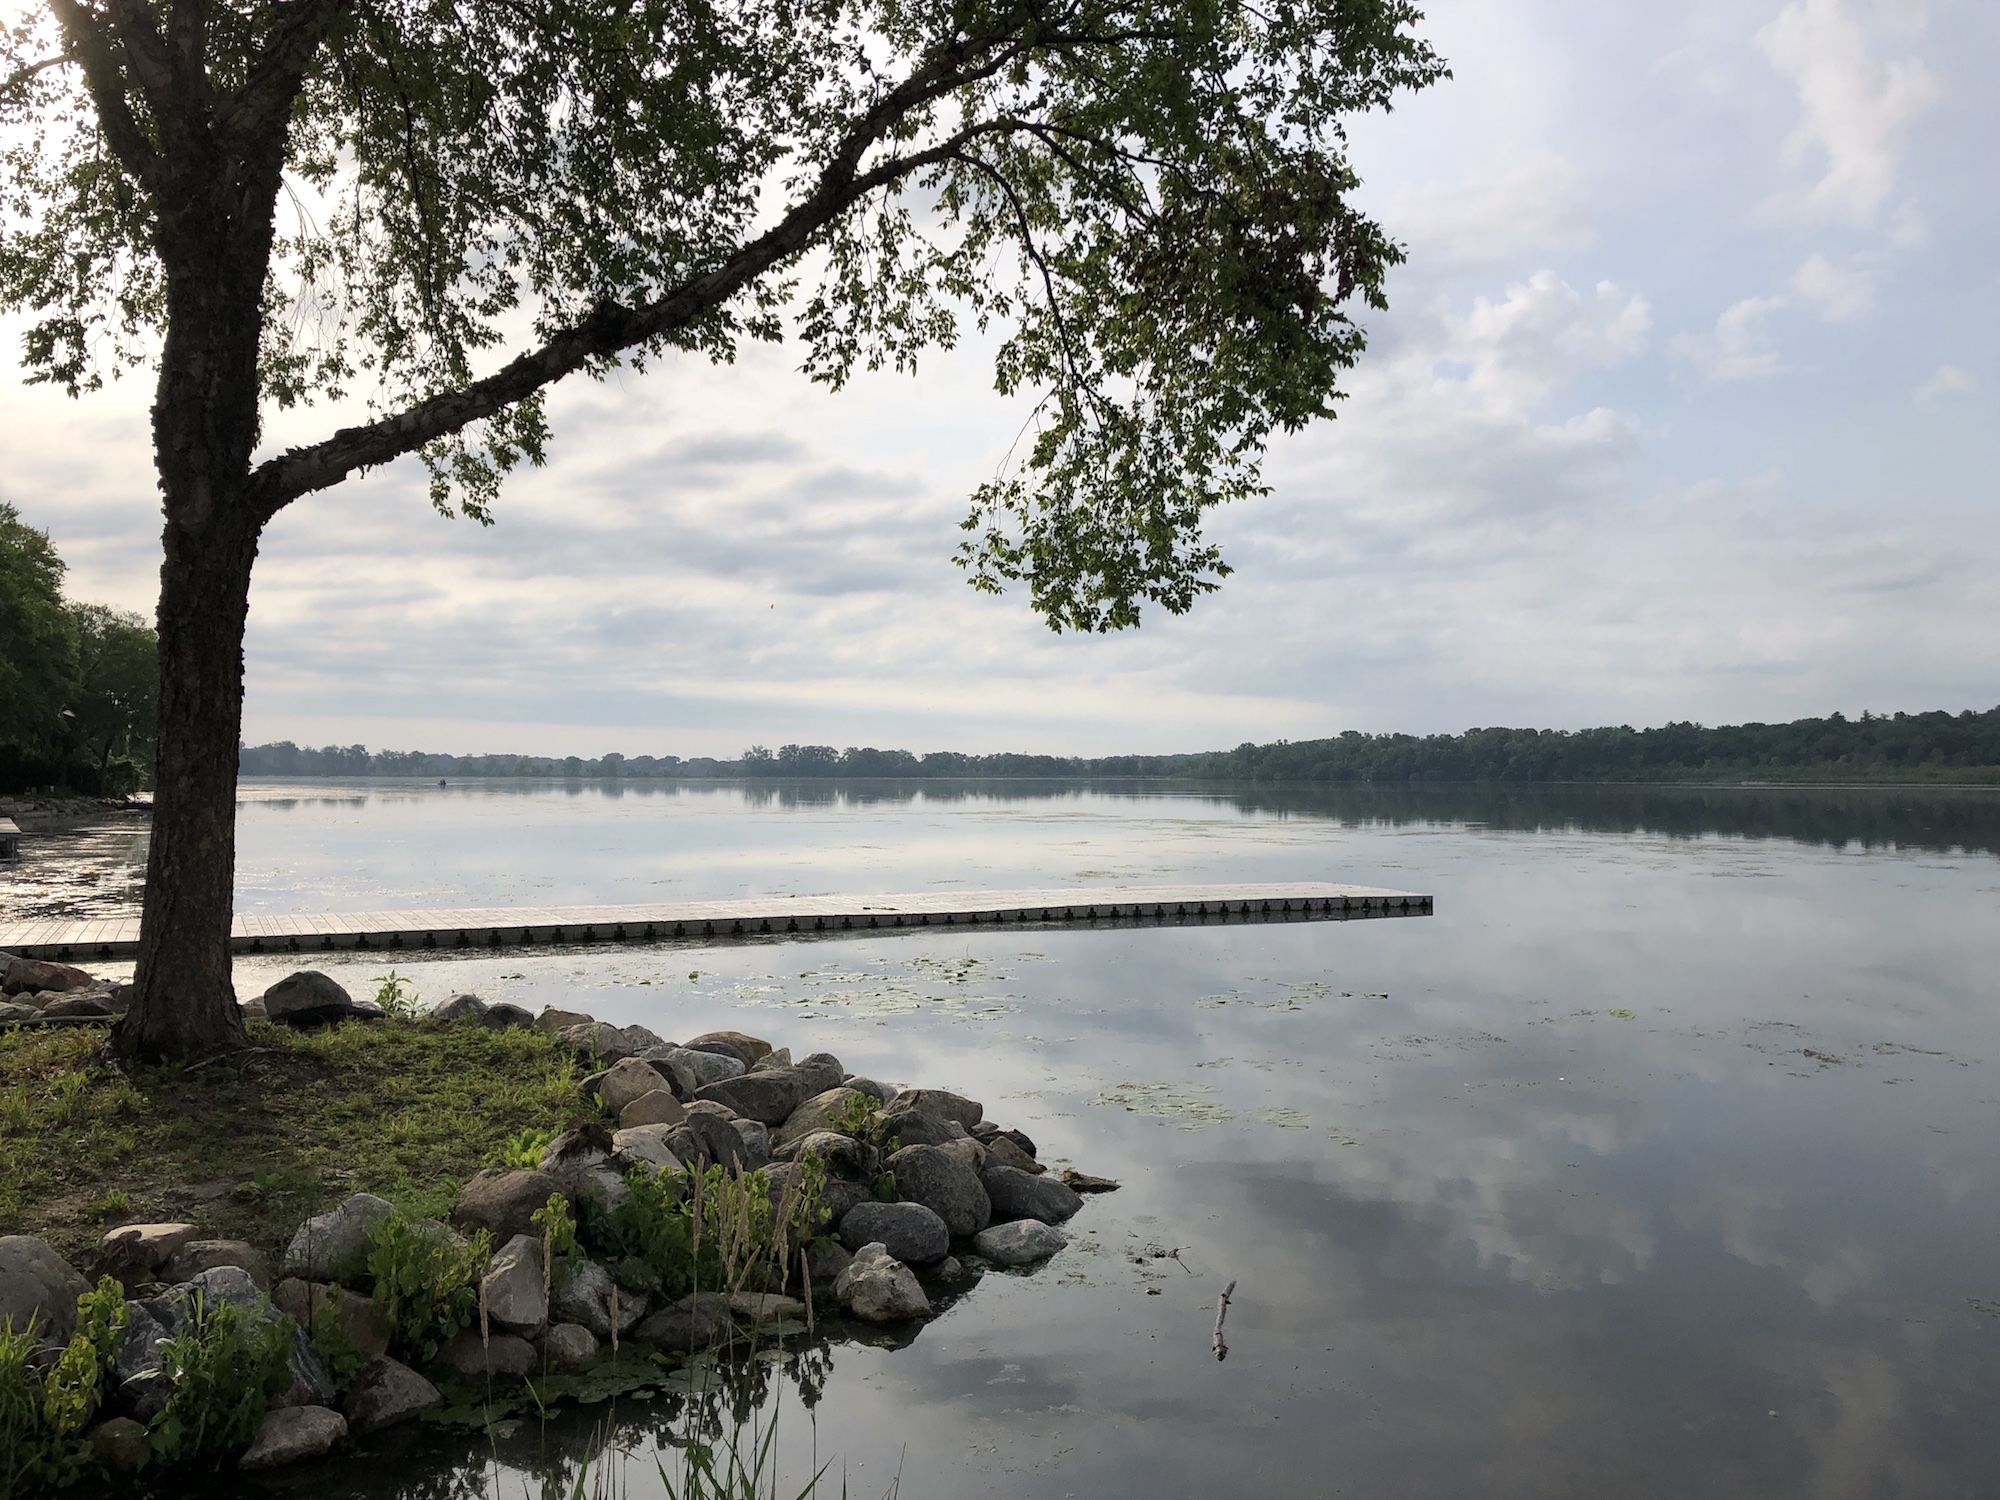 Lake Wingra on June 30, 2019.